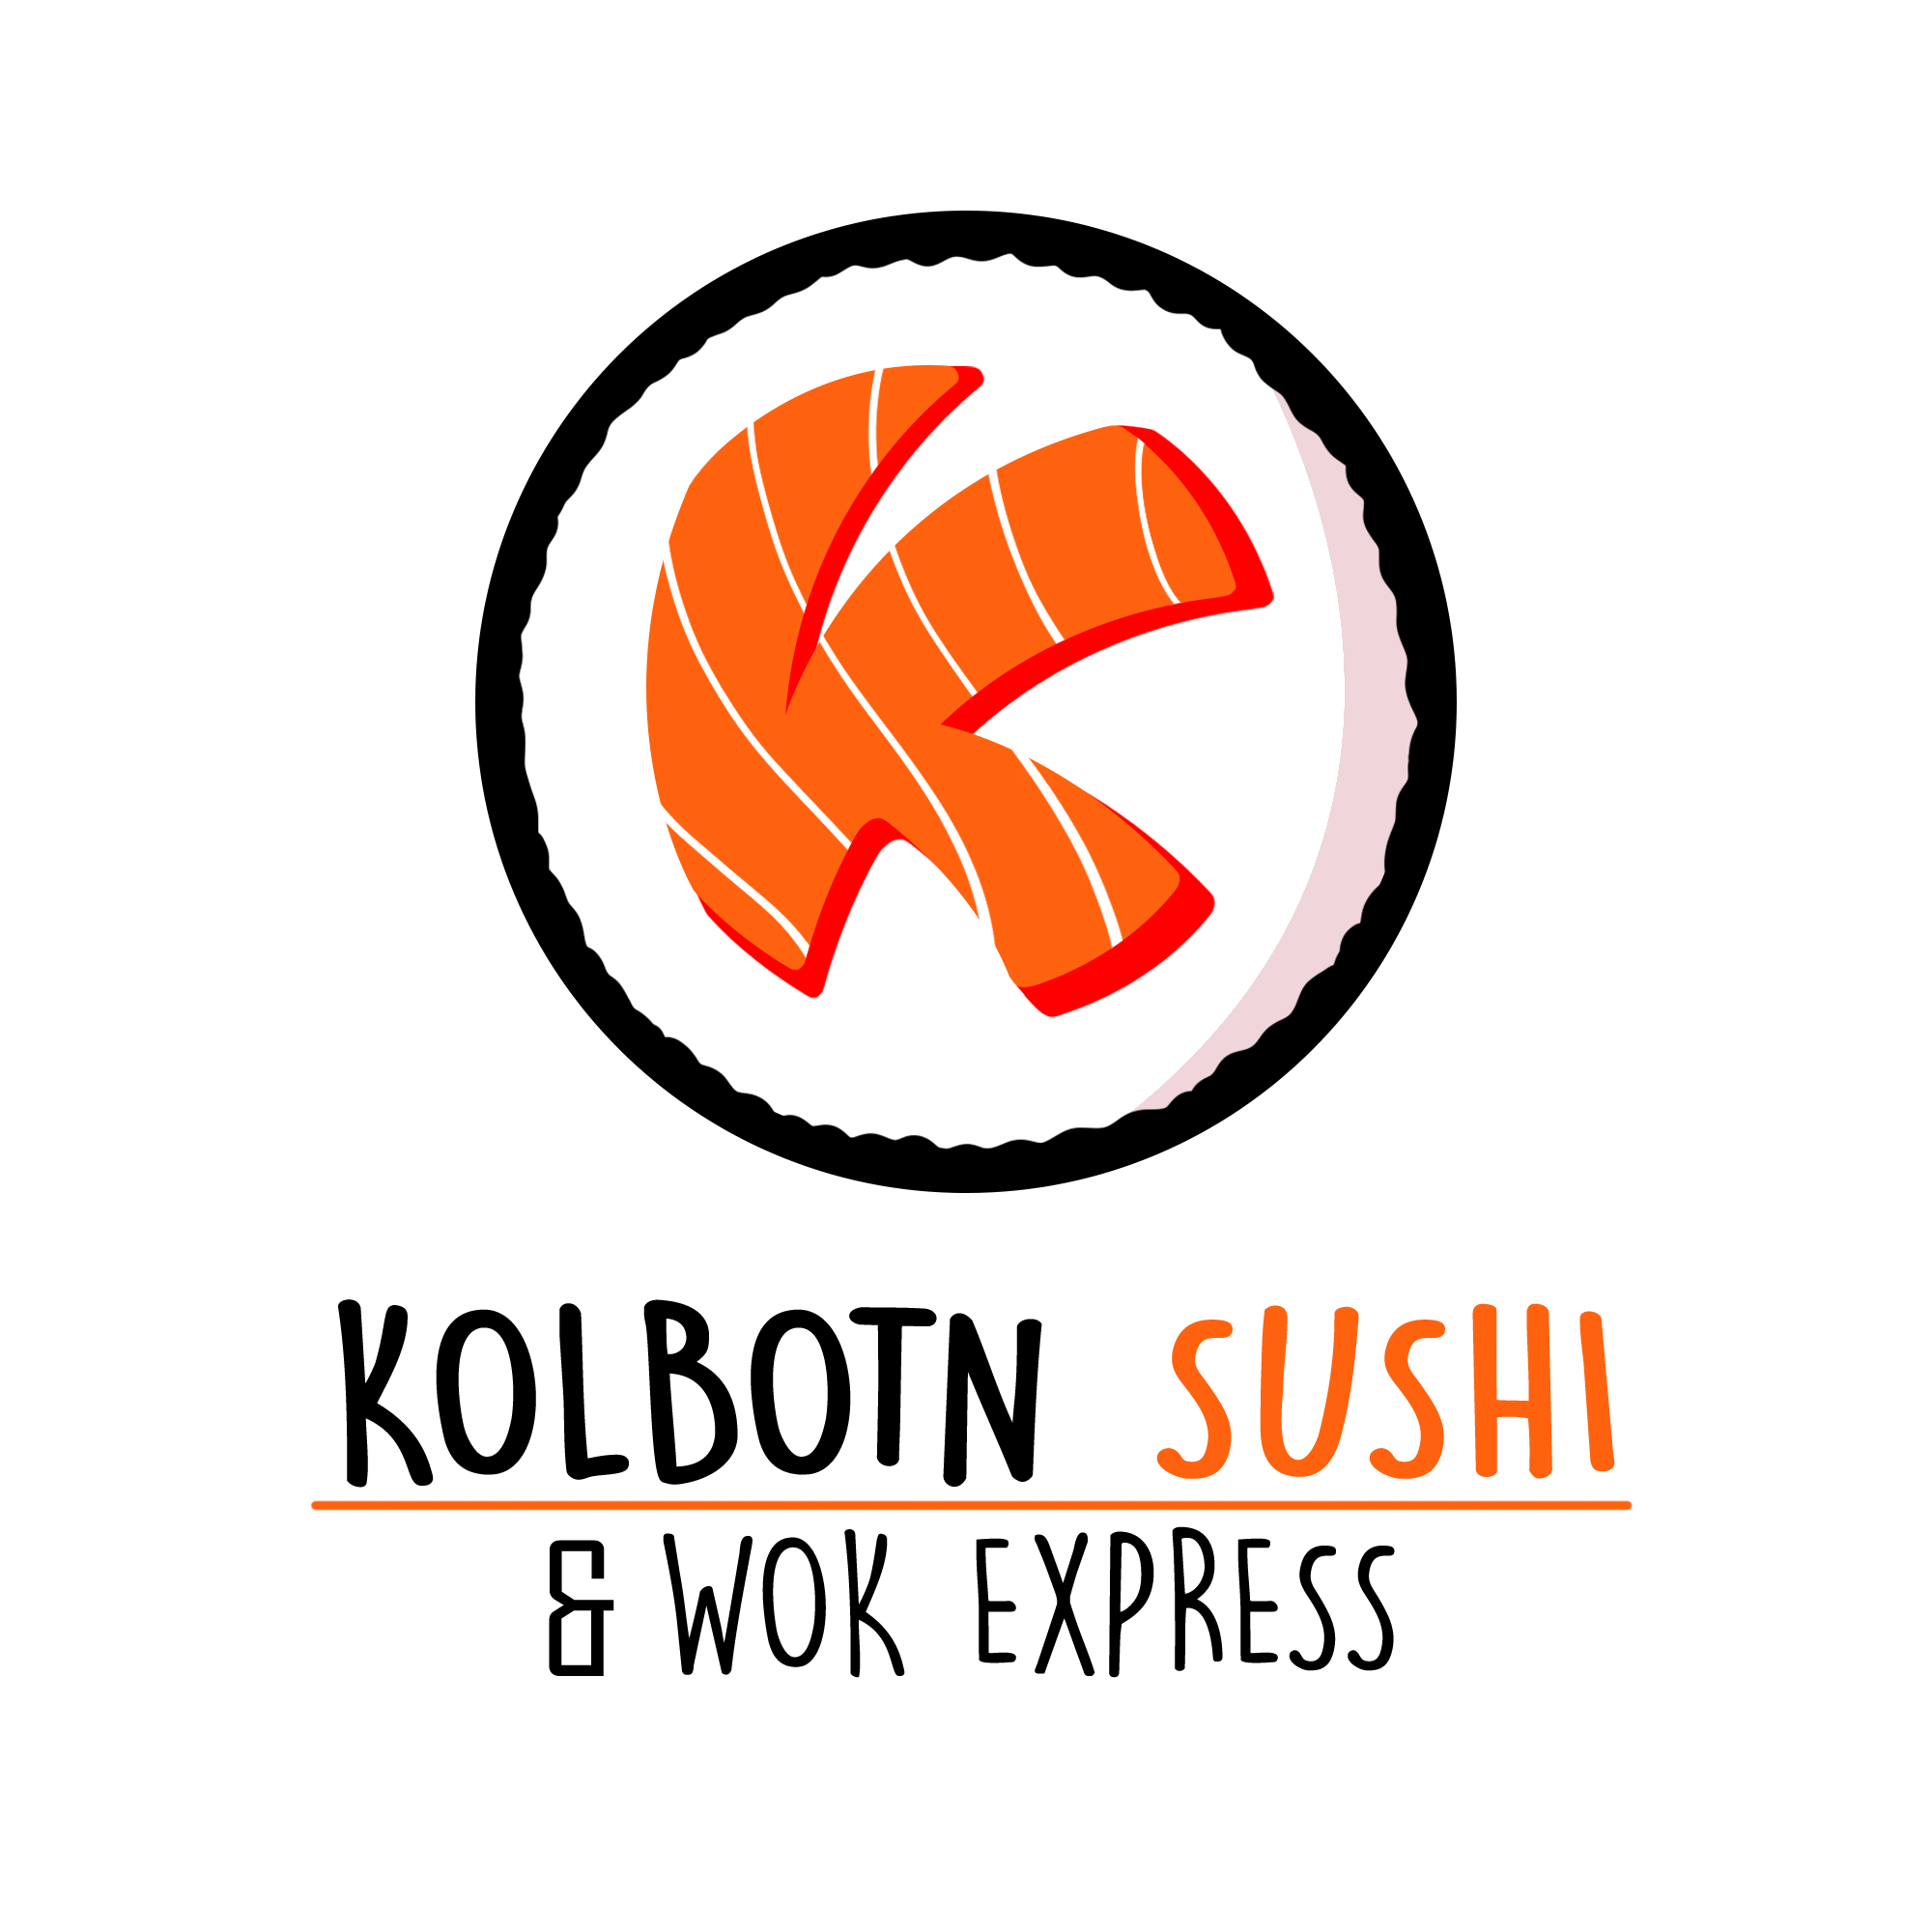 Kolbotn Sushi & Wok Express